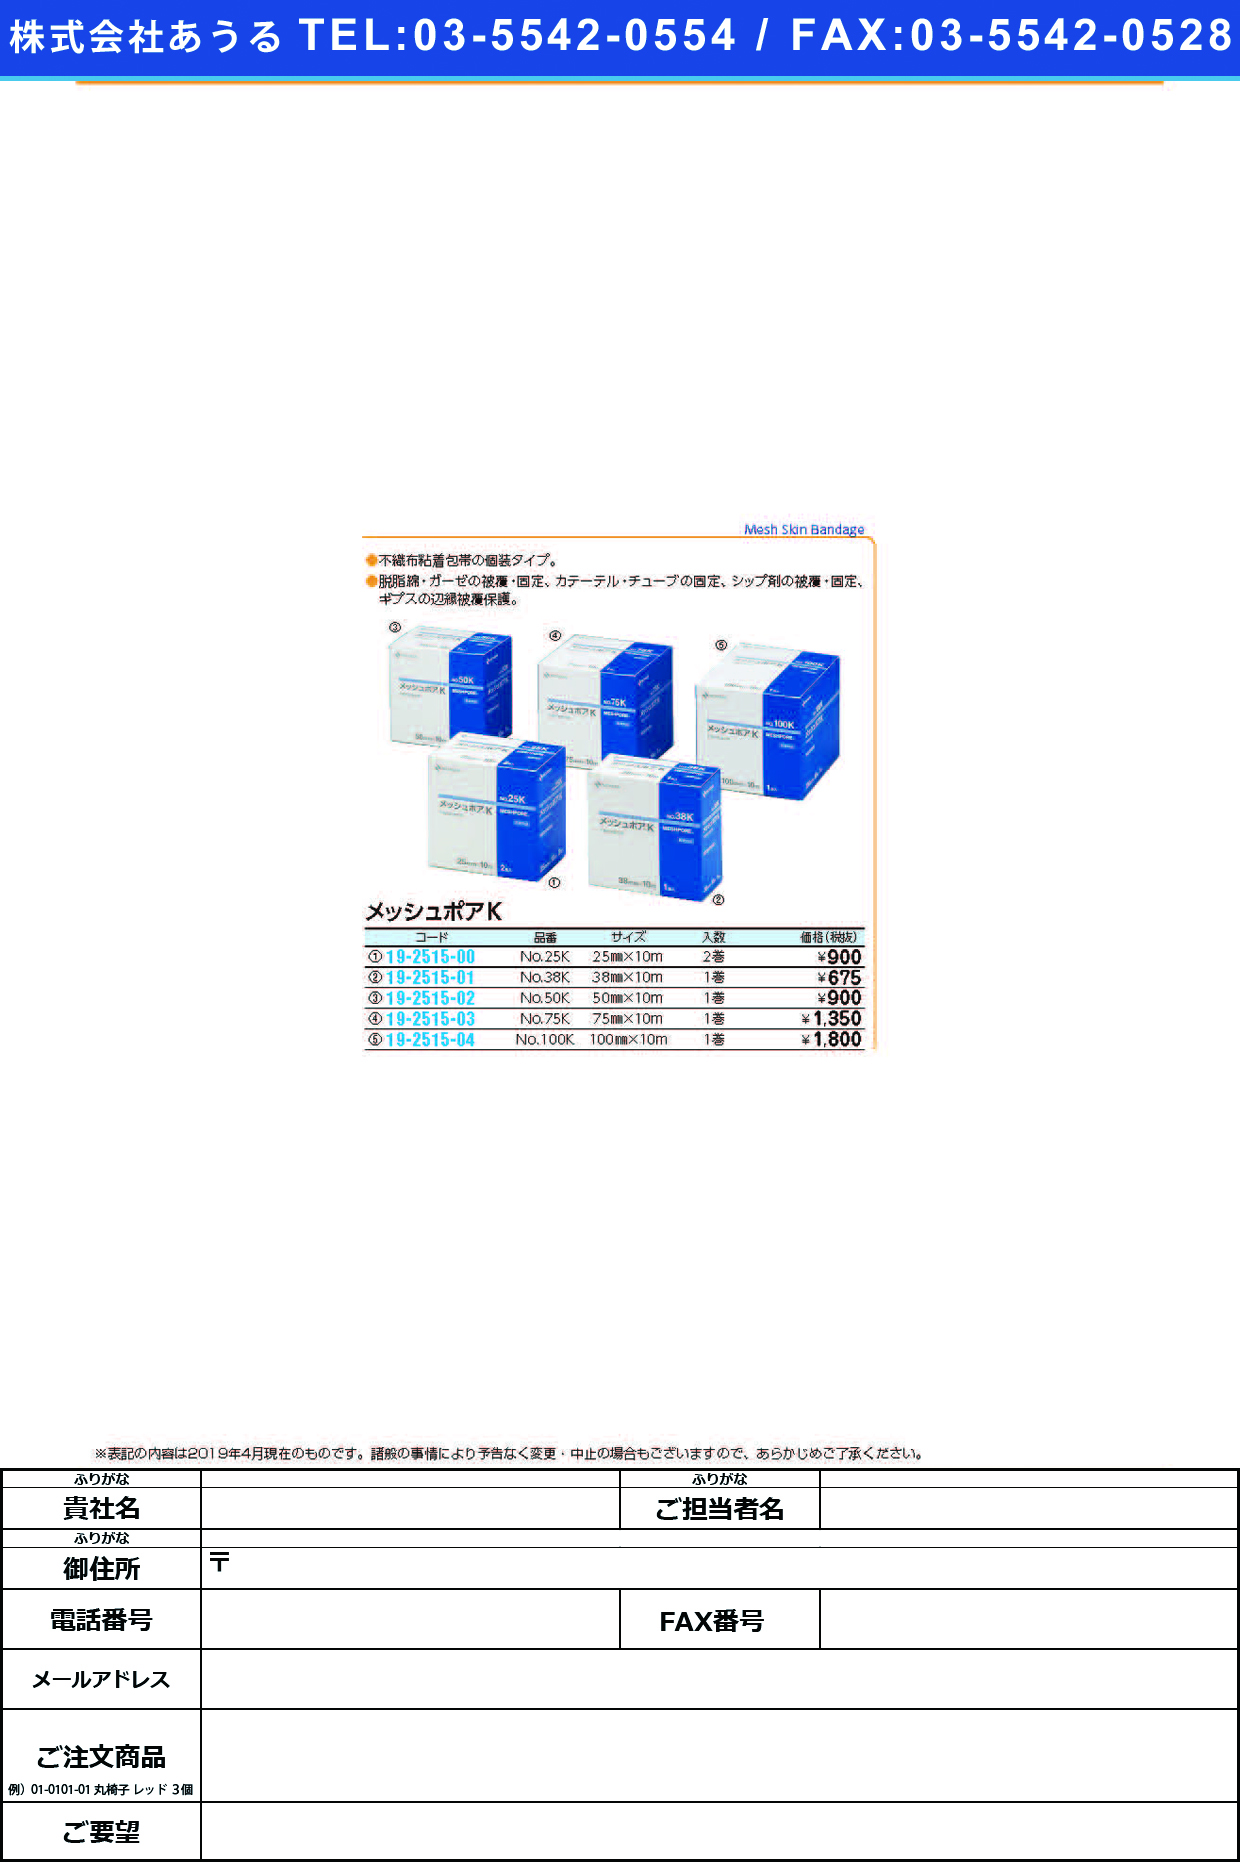 (19-2515-01)メッシュポアＫ NO.38K(38MMX10M) ﾒｯｼｭﾎﾟｱK(ニチバン)【1個単位】【2019年カタログ商品】